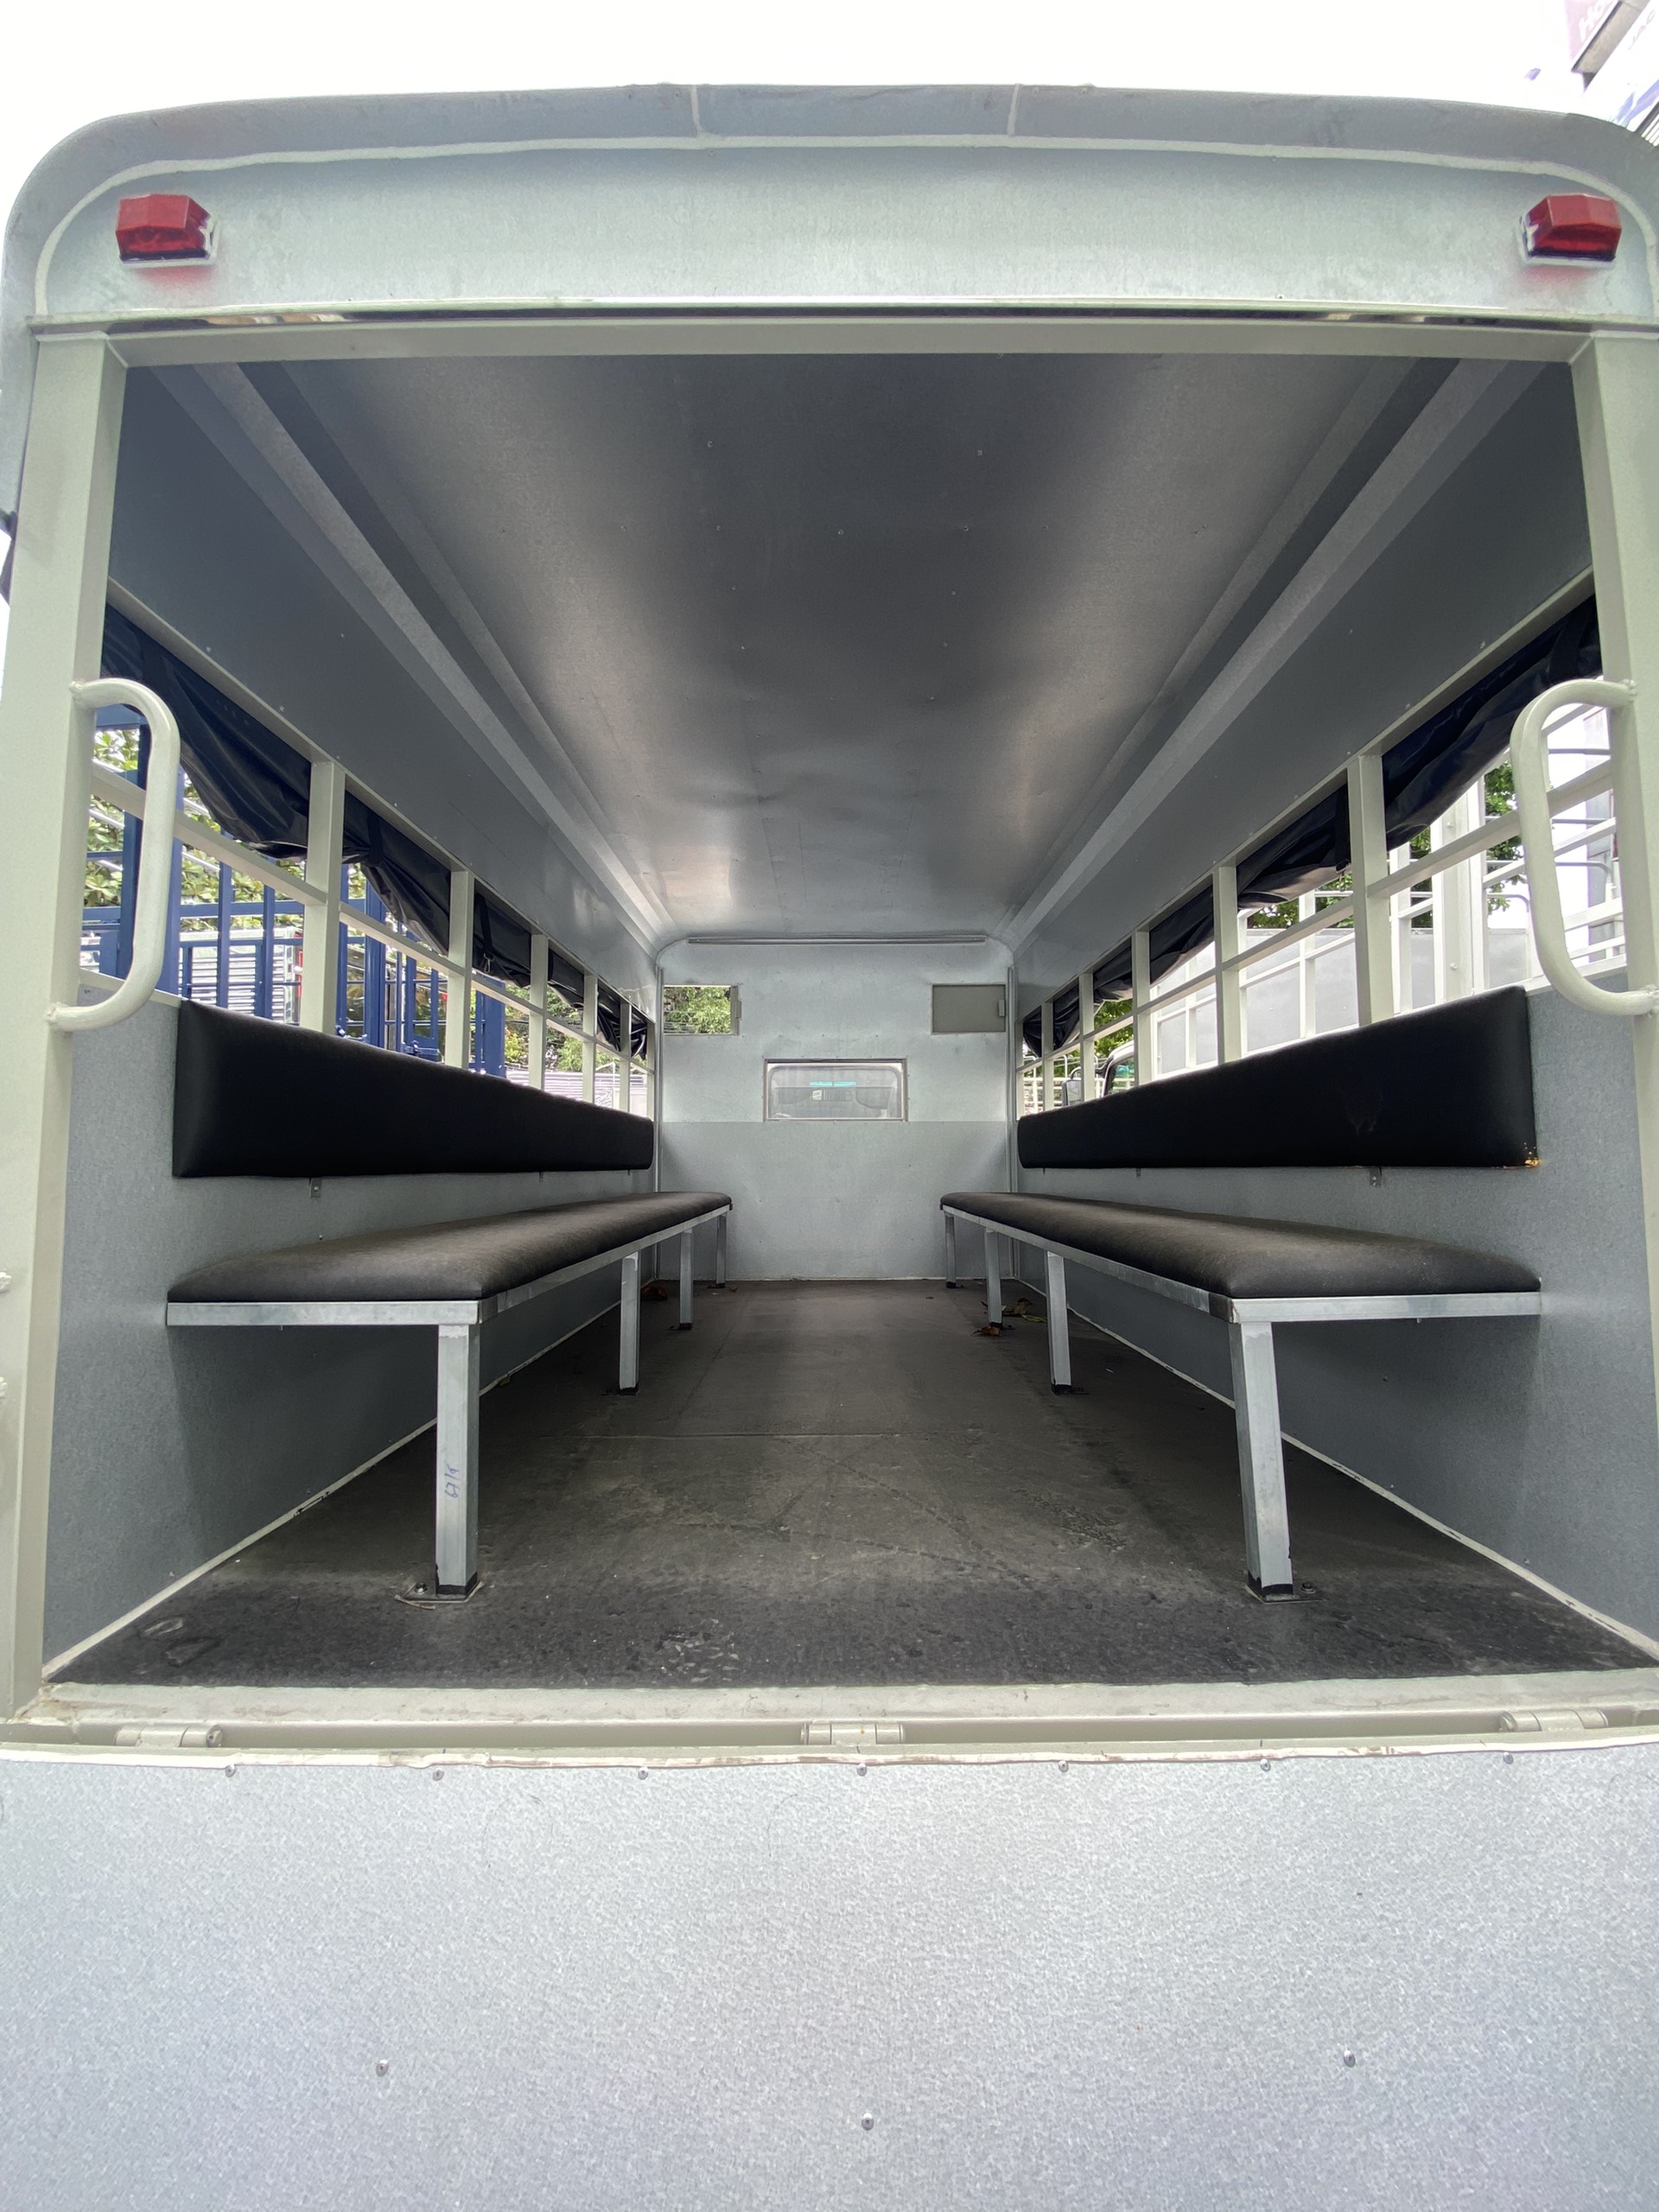 Thùng xe bố trí 2 băng ghế ngồi cho học viên, sàn sắt phẳng phiu, ghế ngồi bản to chắc chắn.